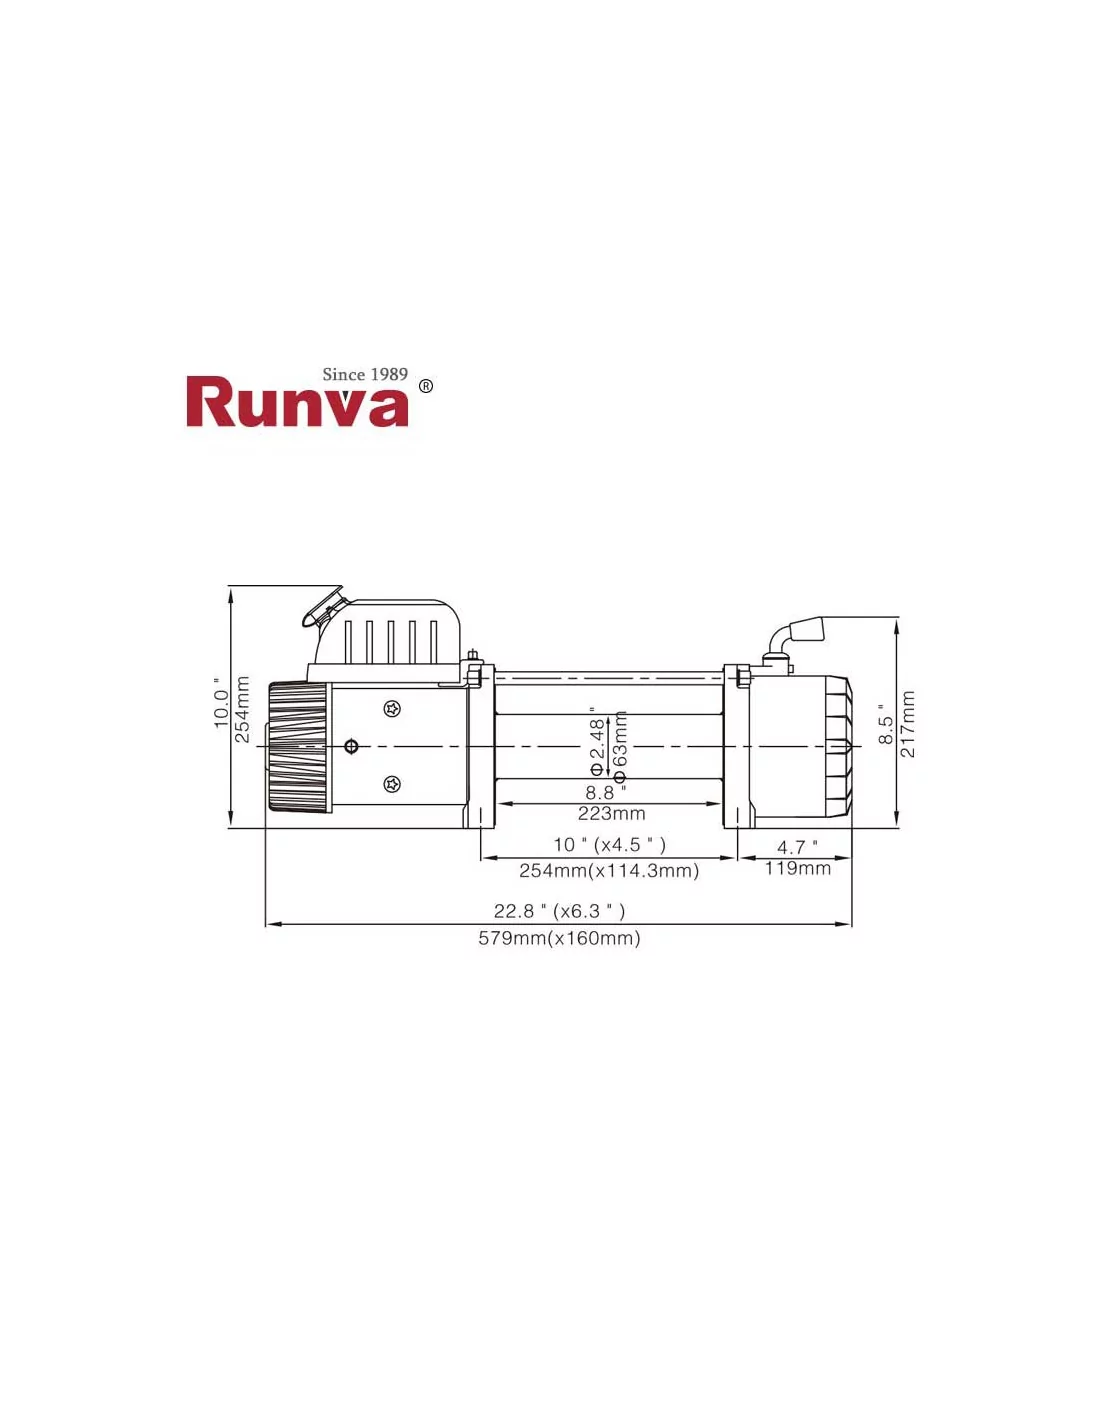 Cabrestante eléctrico Runva EWX12000UWS3 12V con cuerda de acero -  UNITRAILER